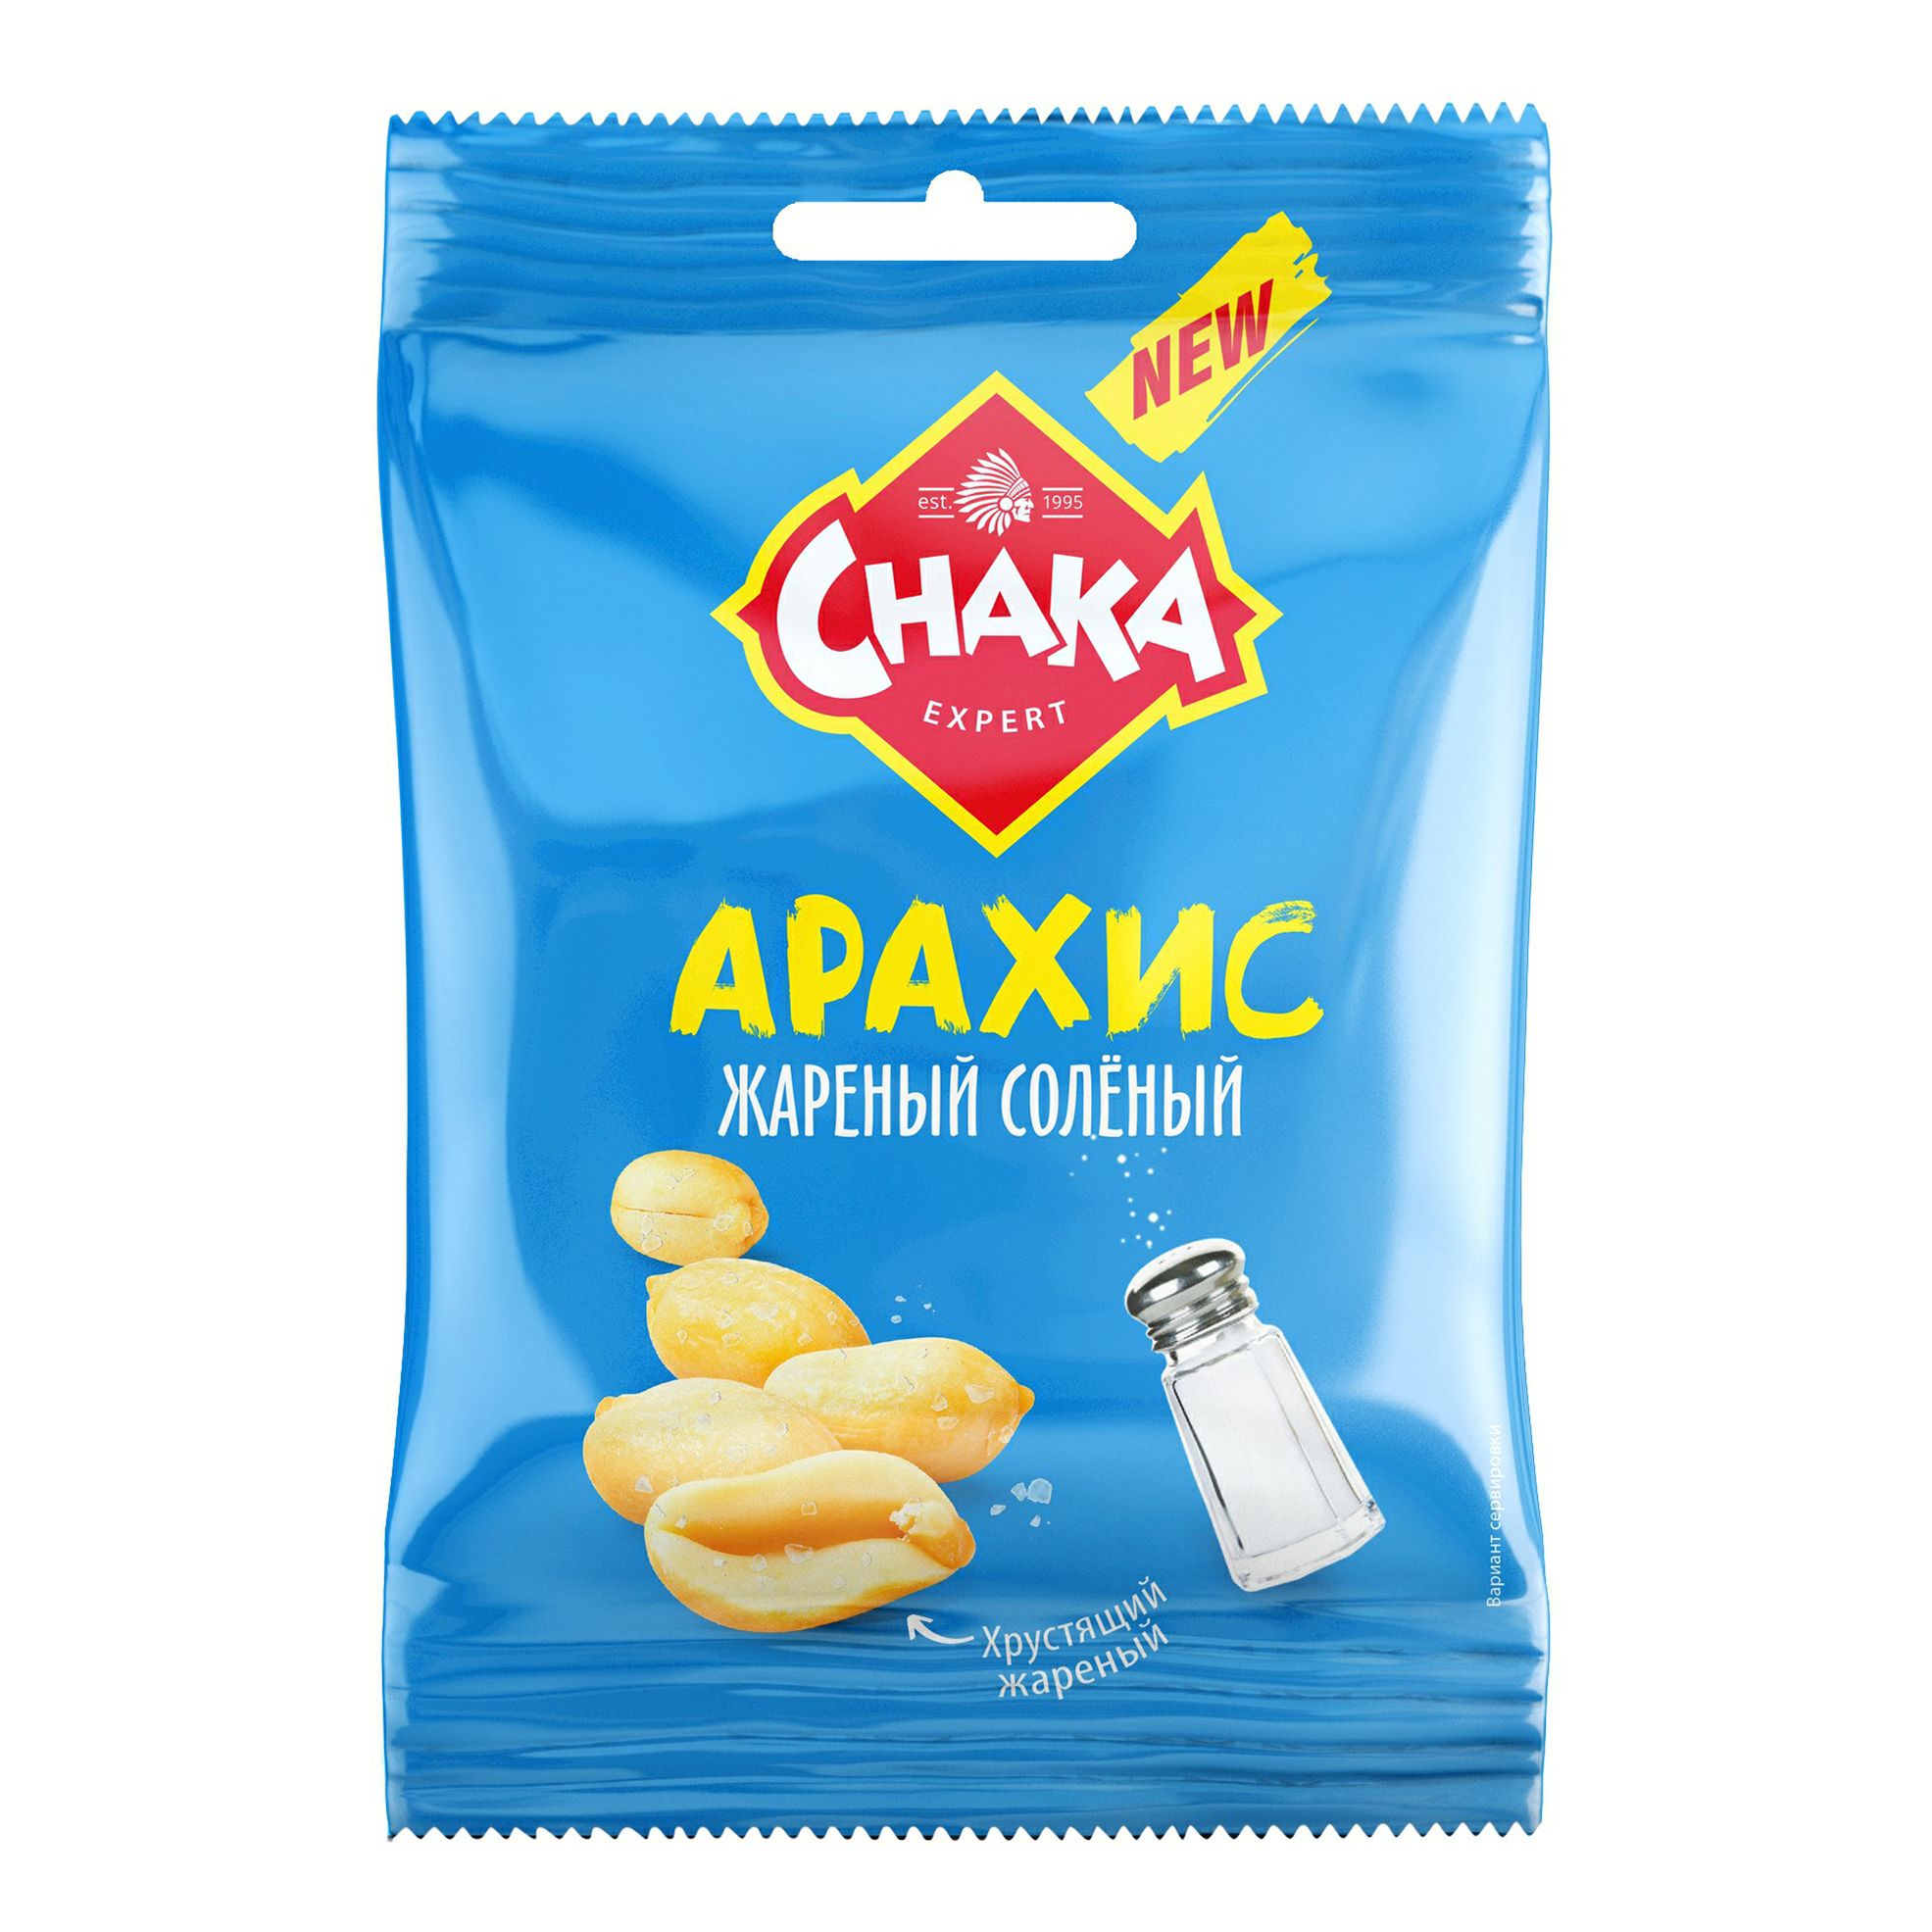 Арахис Chaka обжаренный соленый 100 г